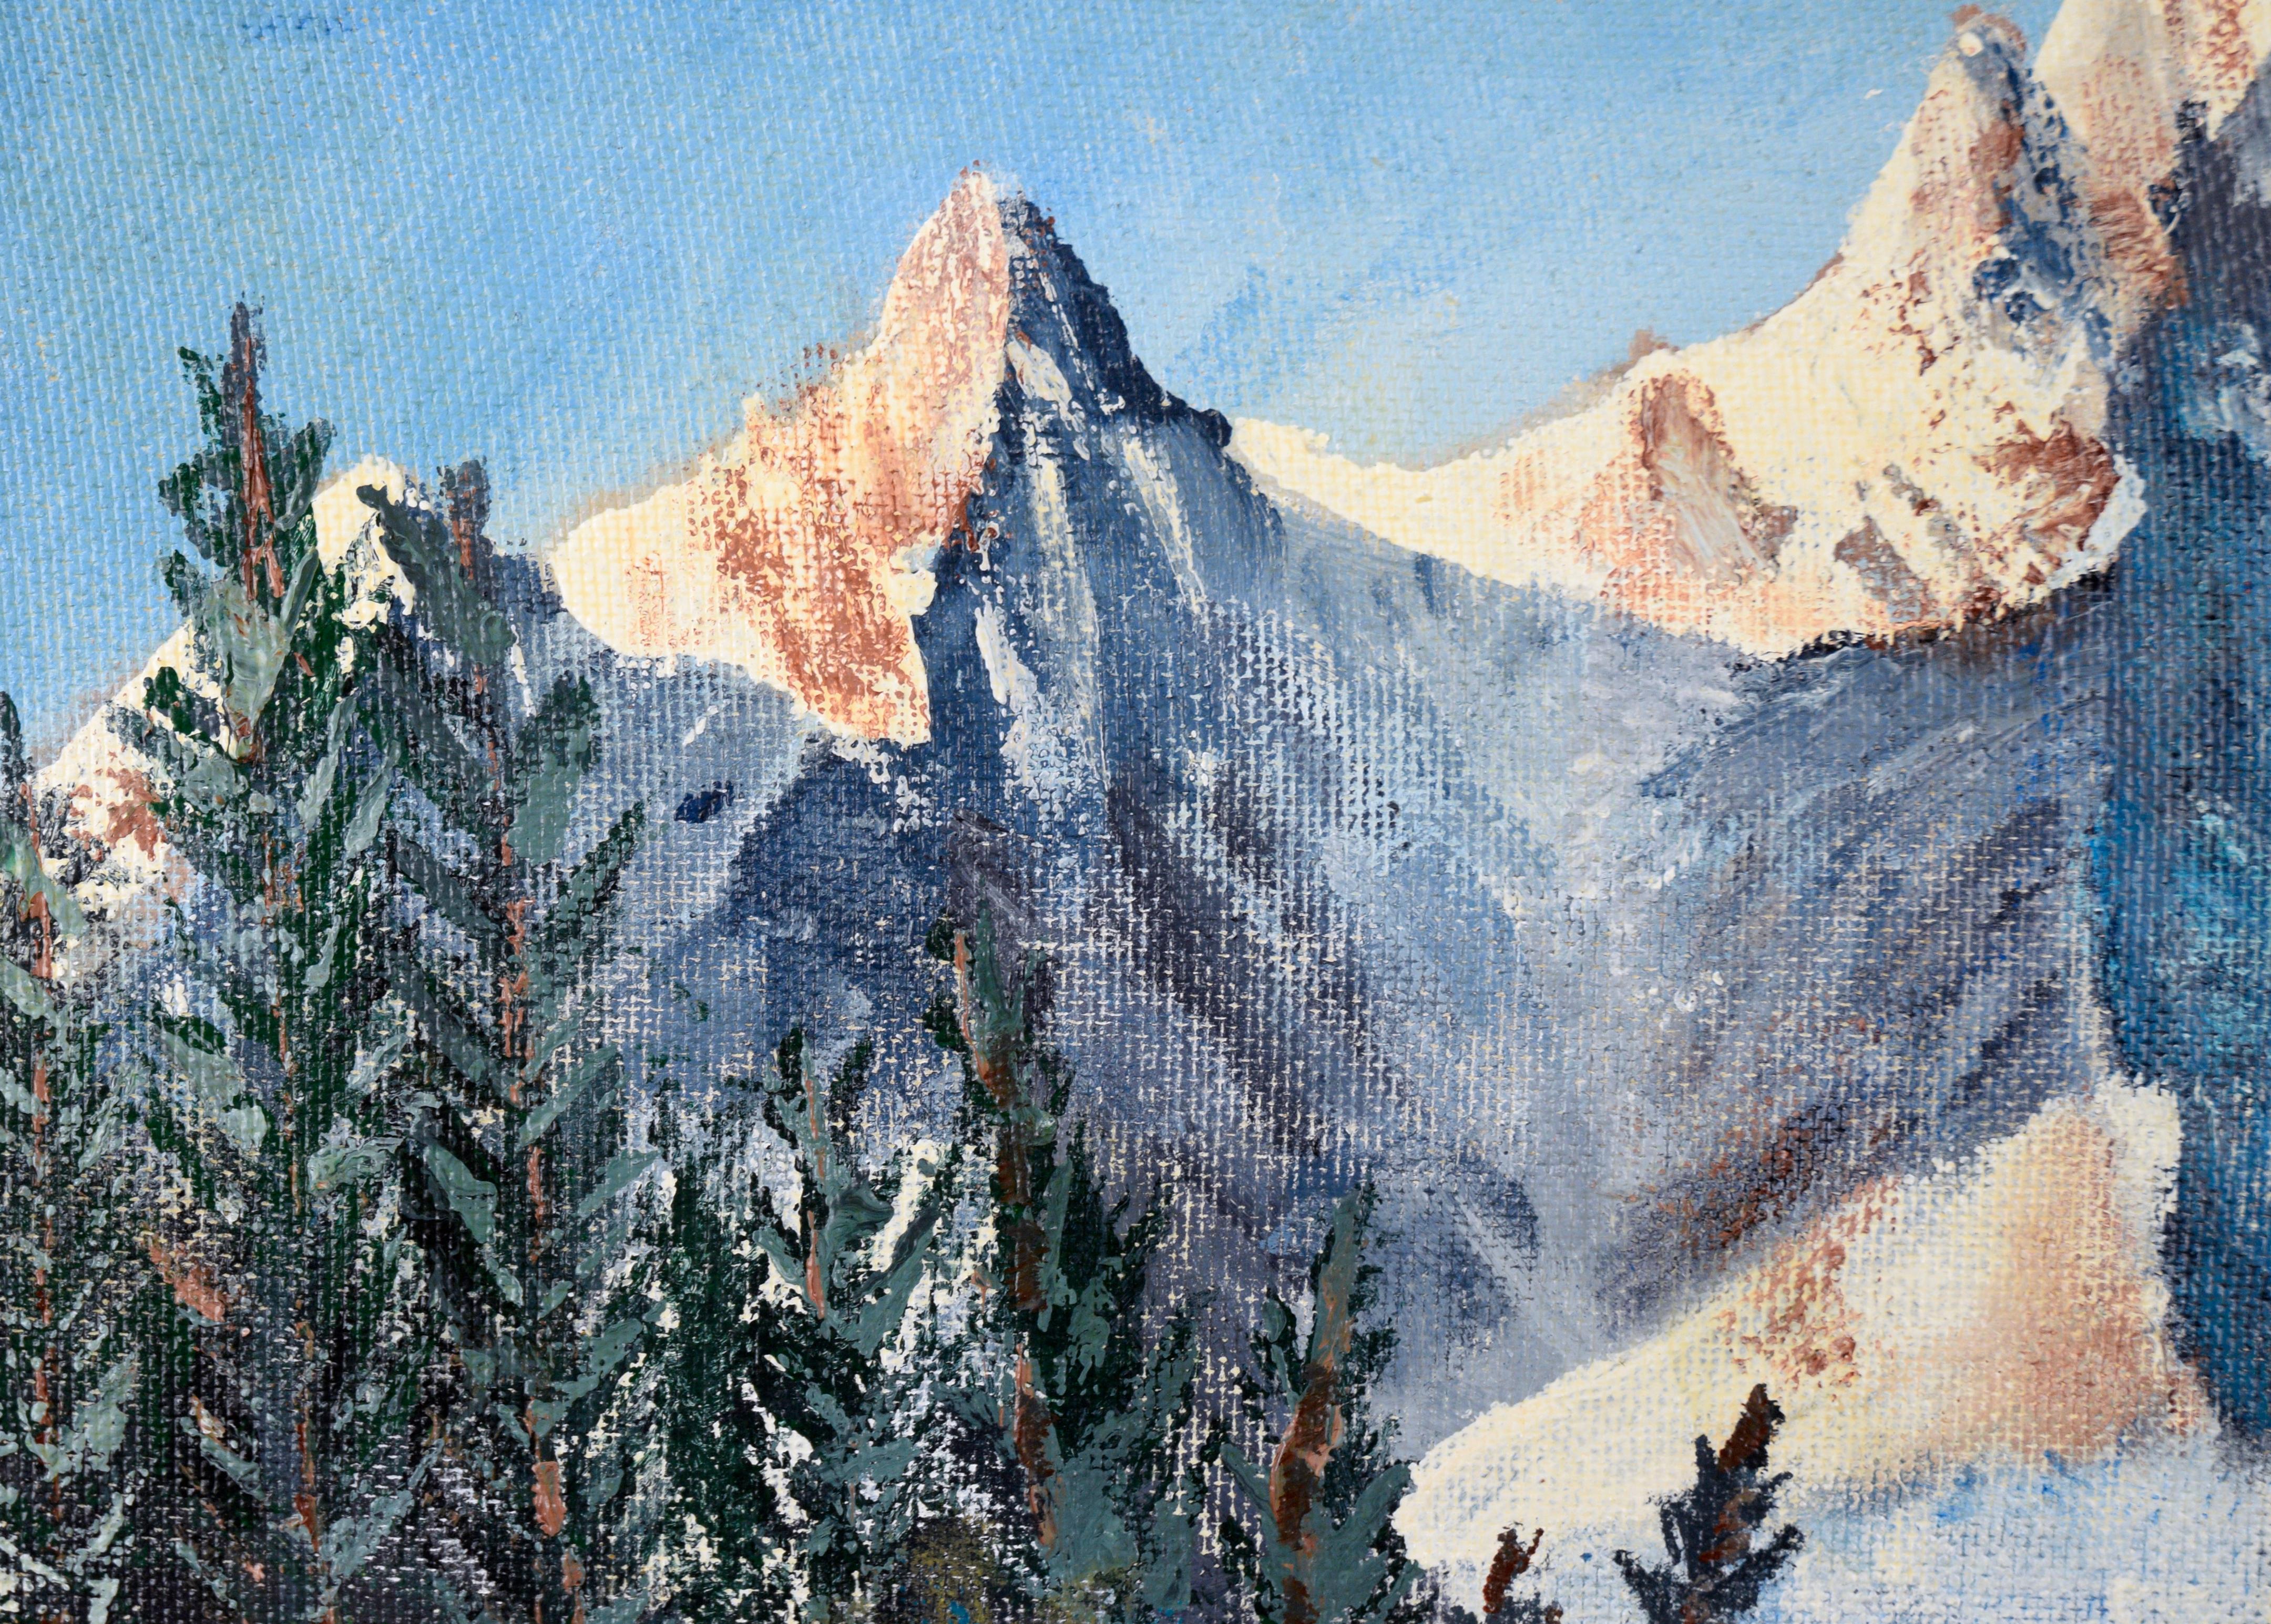 Sierra Mountain Lake Landscape von L.V. Verbrennungen (Amerikanischer Impressionismus), Painting, von L. V. Burns